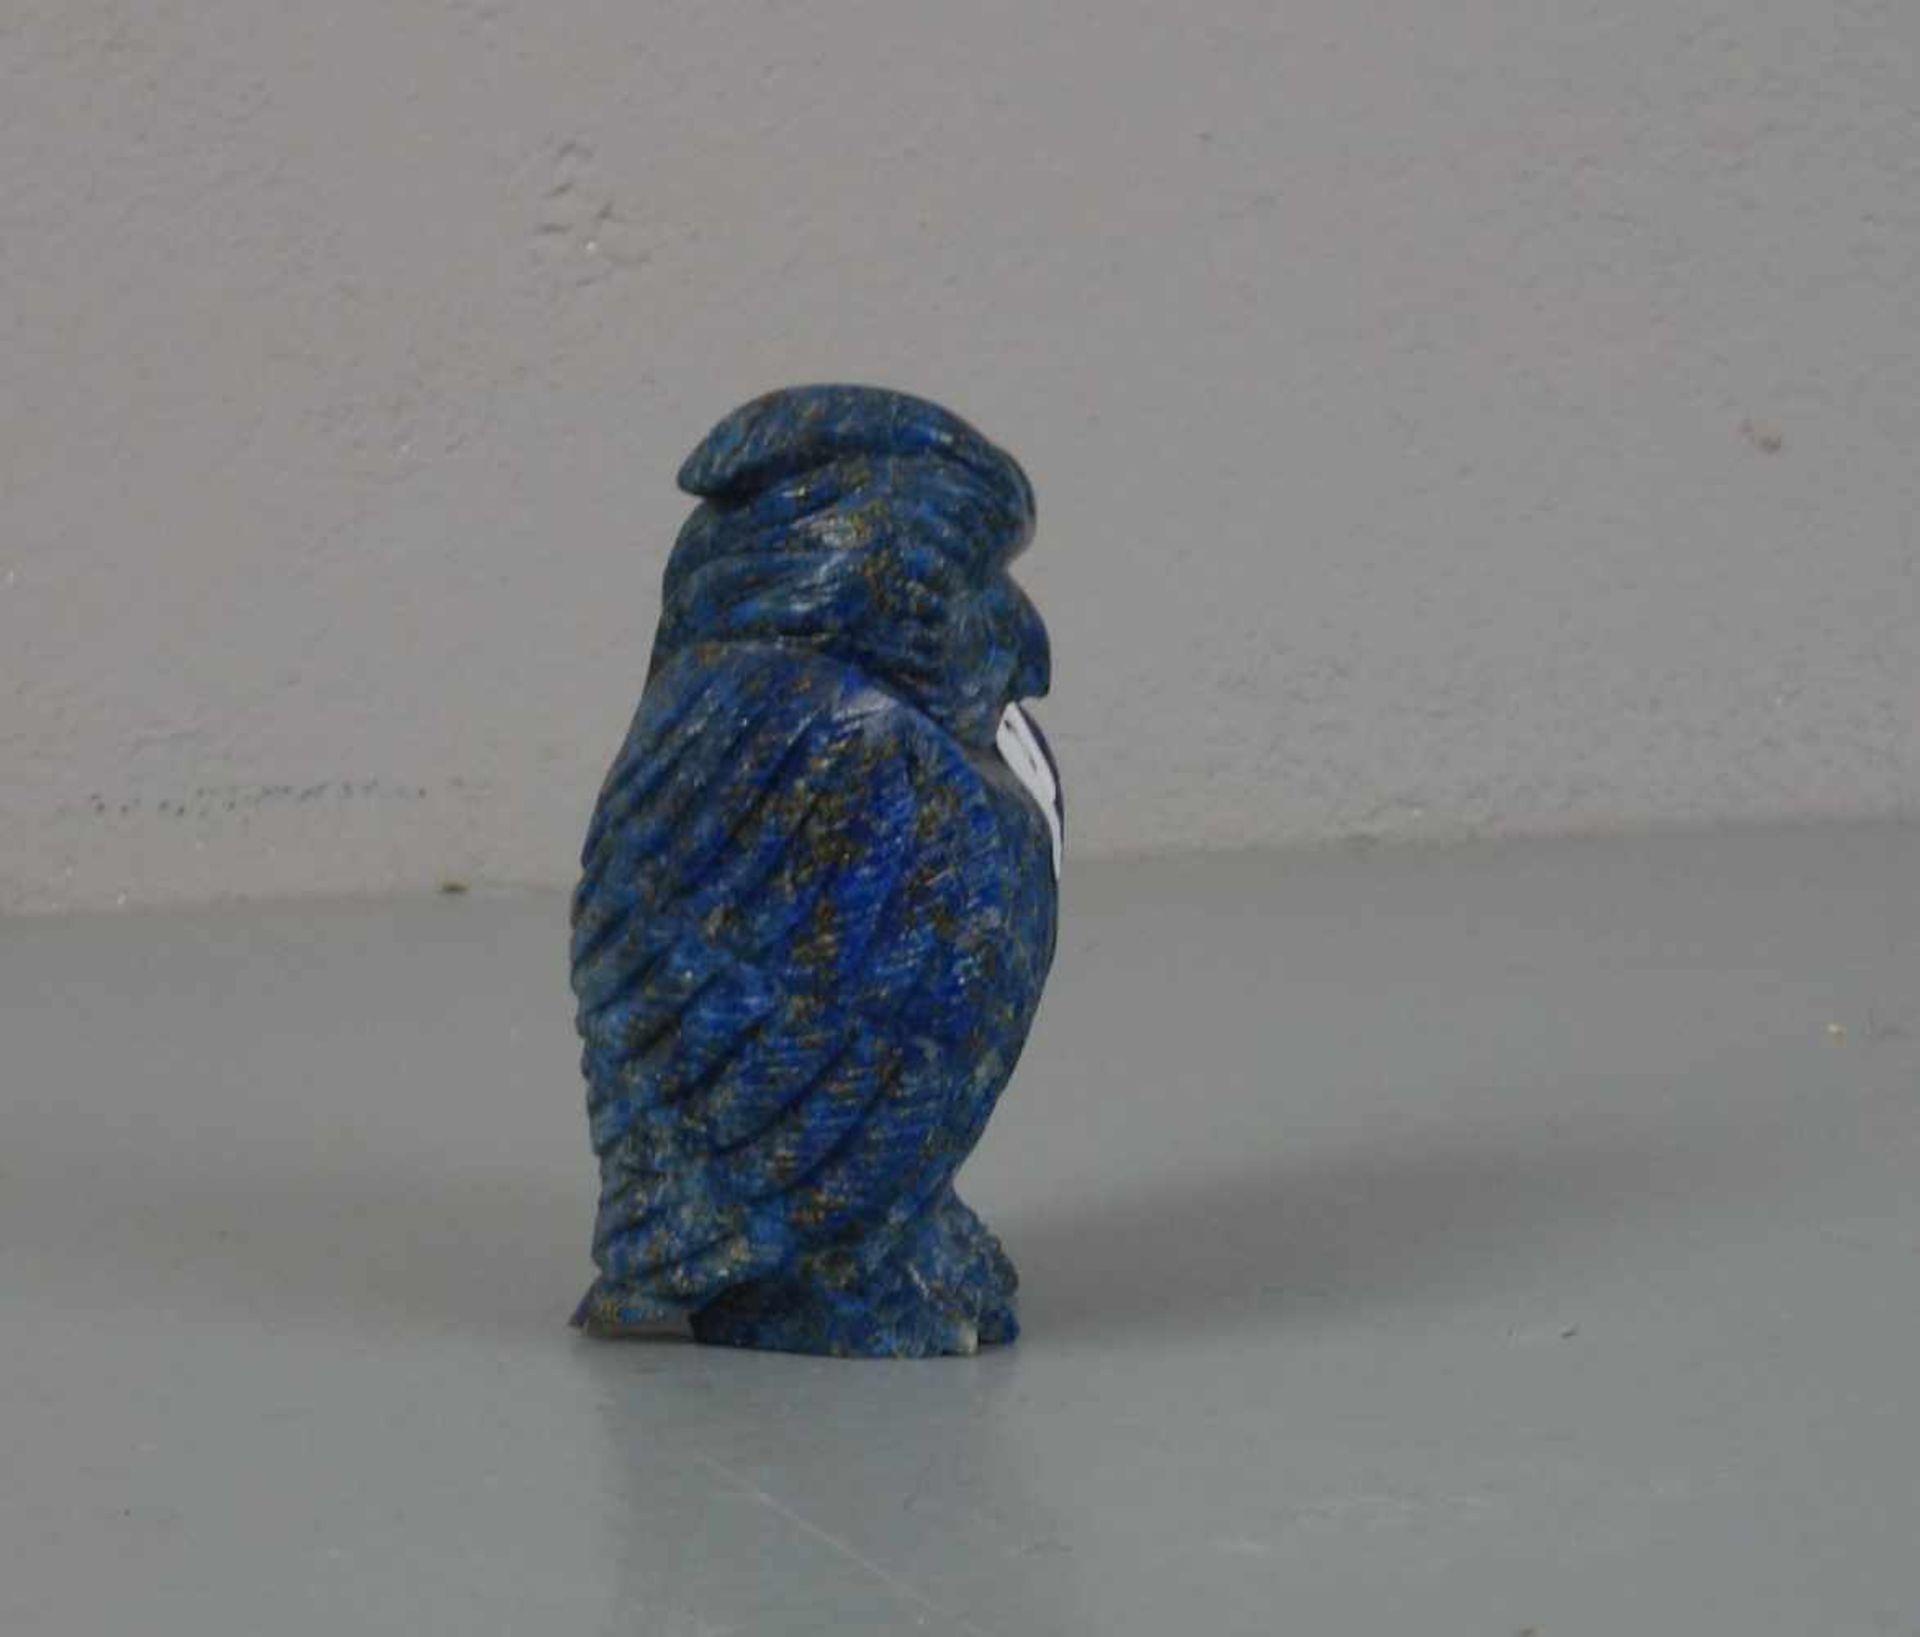 TIERFIGUR / ZIEROBJEKT: Edelstein-Eule / gemstone owl figure, wohl 20. Jh., ungemarkt, geschnitzt, - Bild 2 aus 4